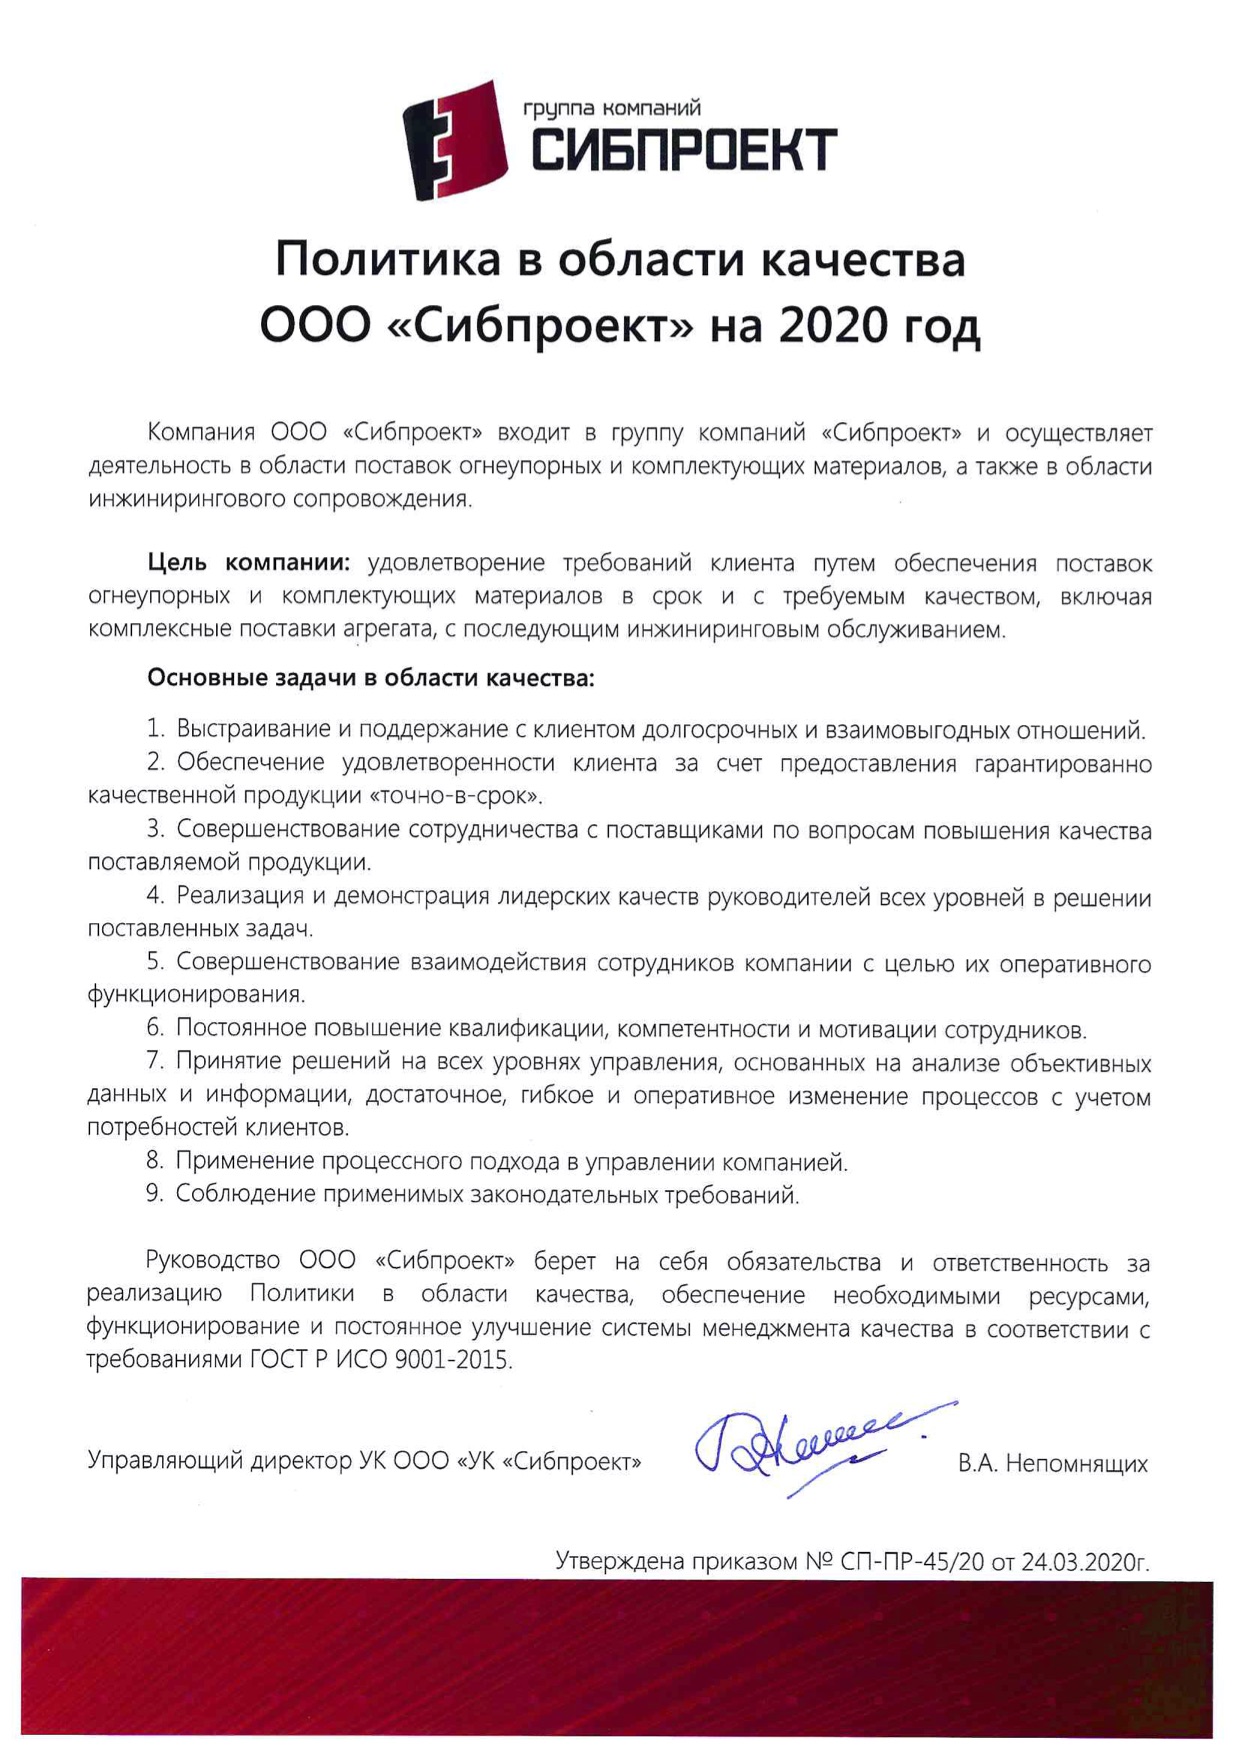 Политика в области качества ООО «Сибпроект» на 2020 г.